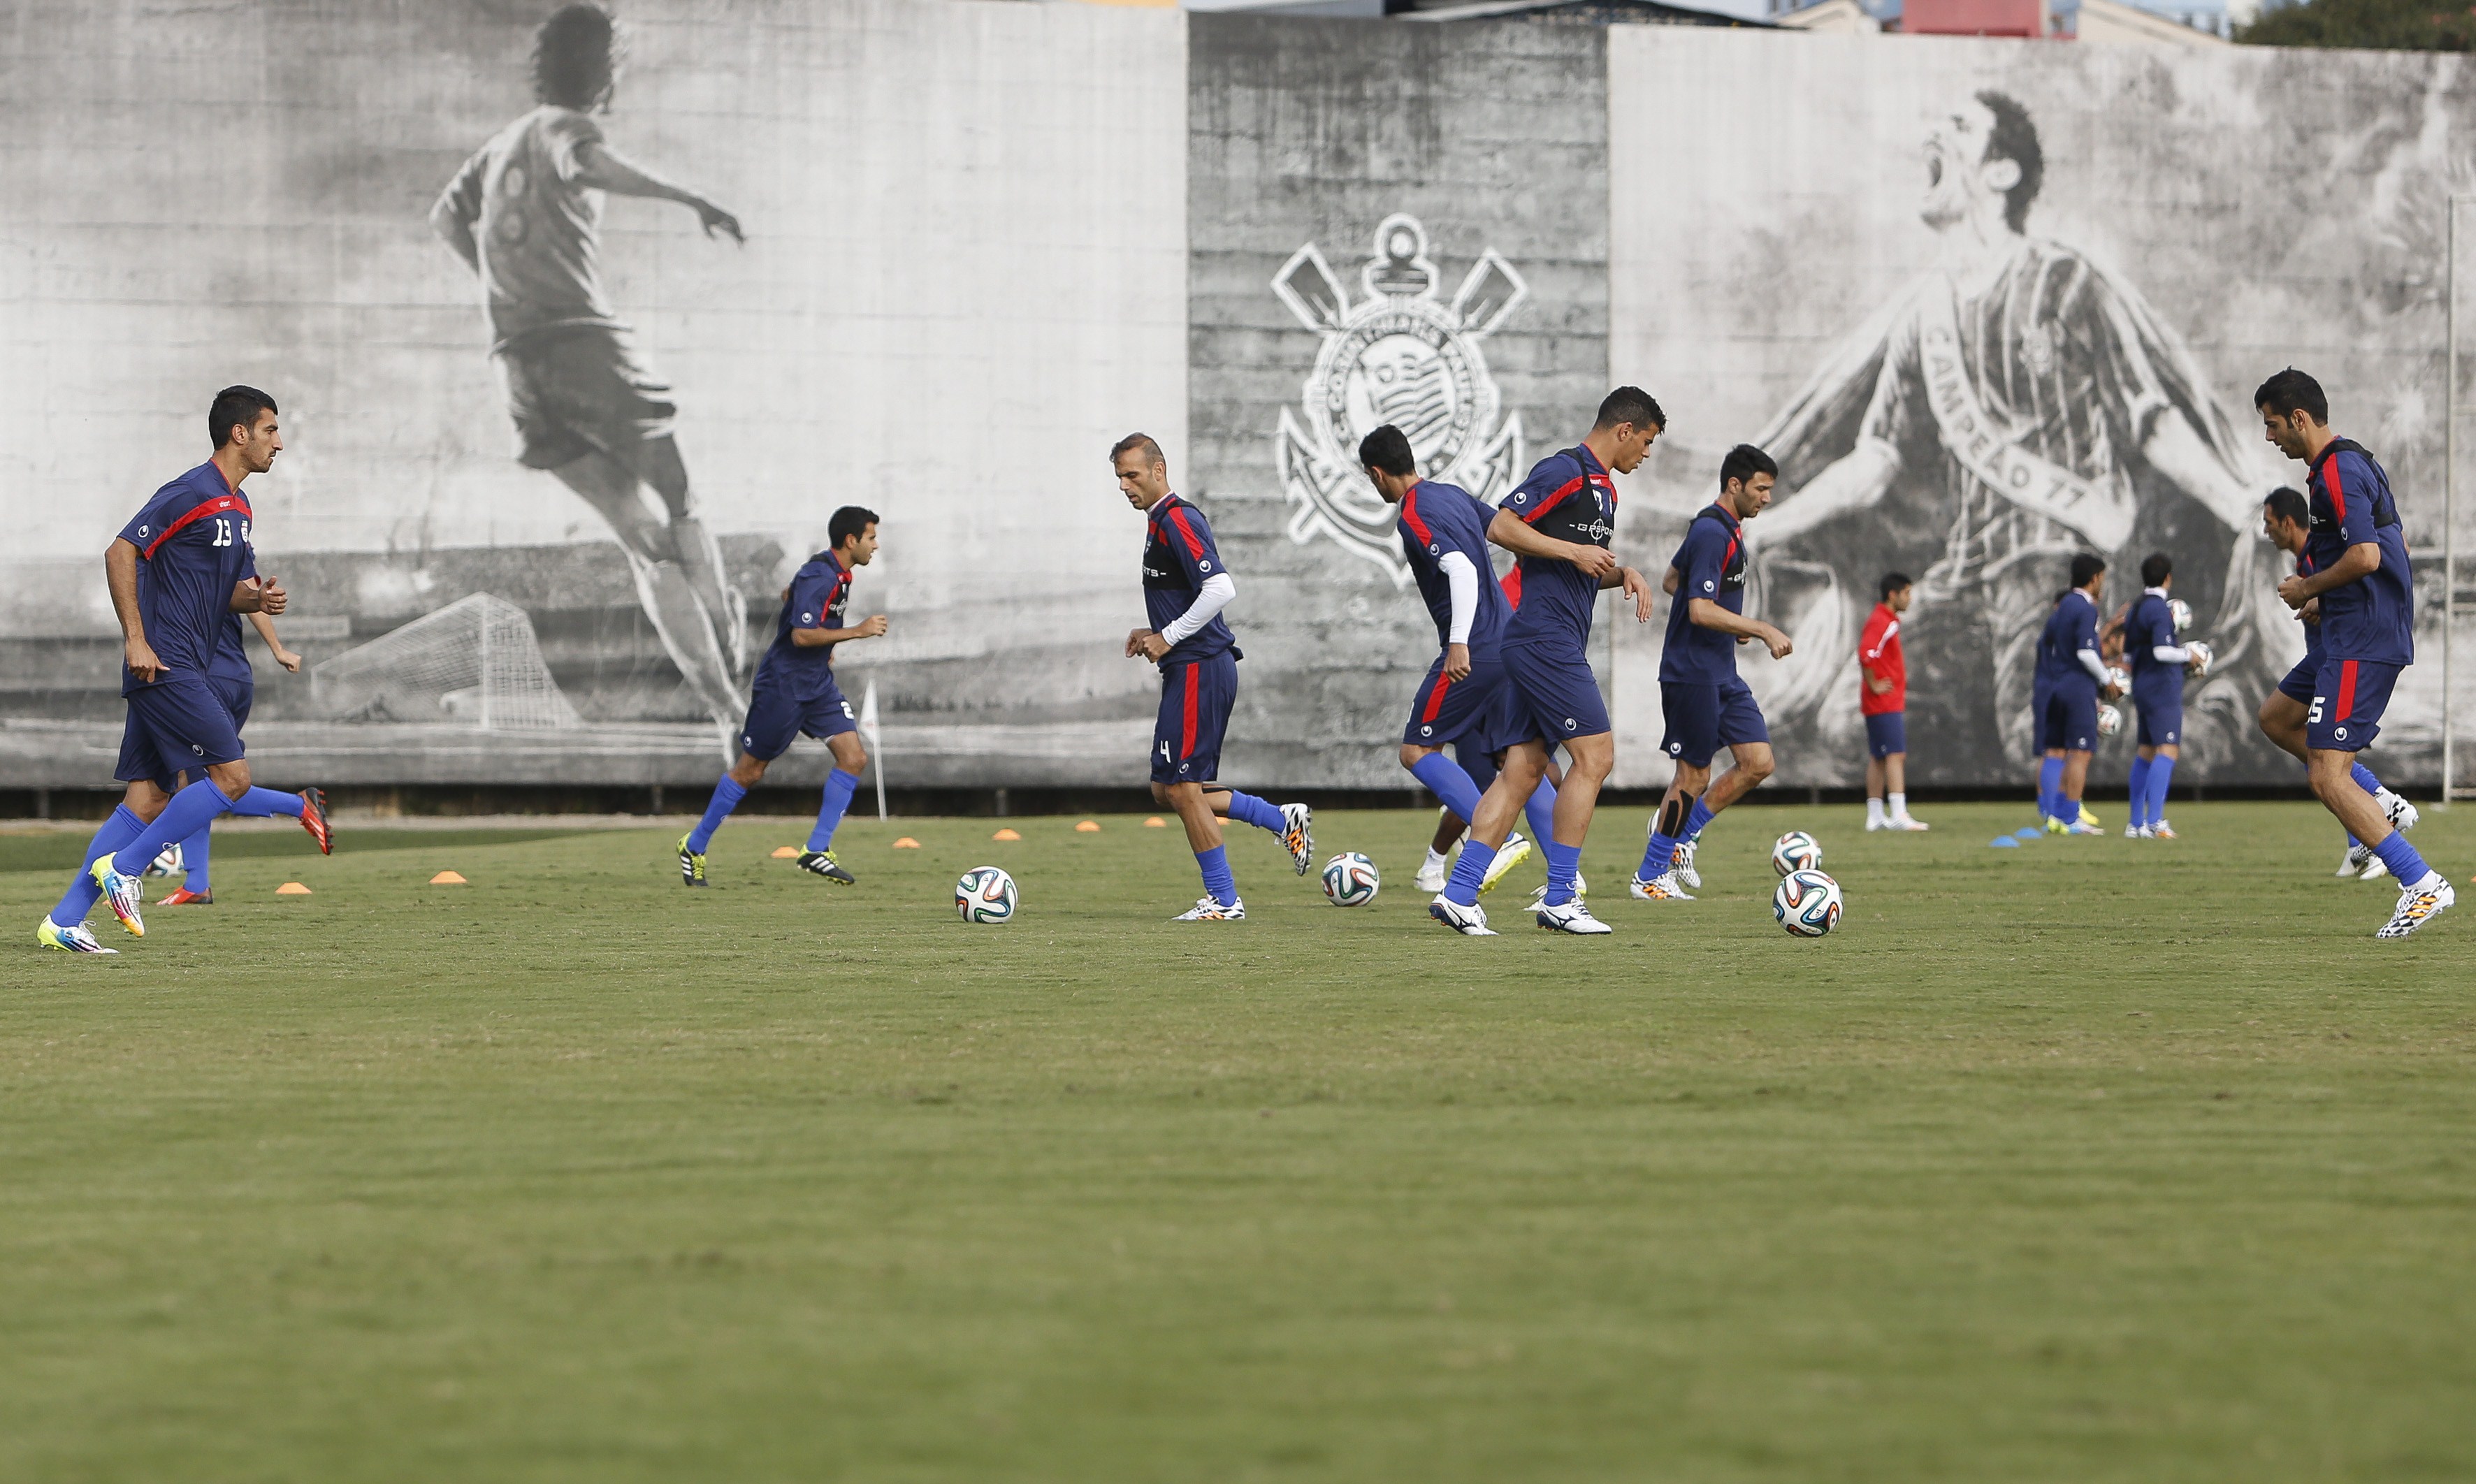 صور تدريبات المنتخبات المشاركة في كأس العالم 2014 بالبرازيل